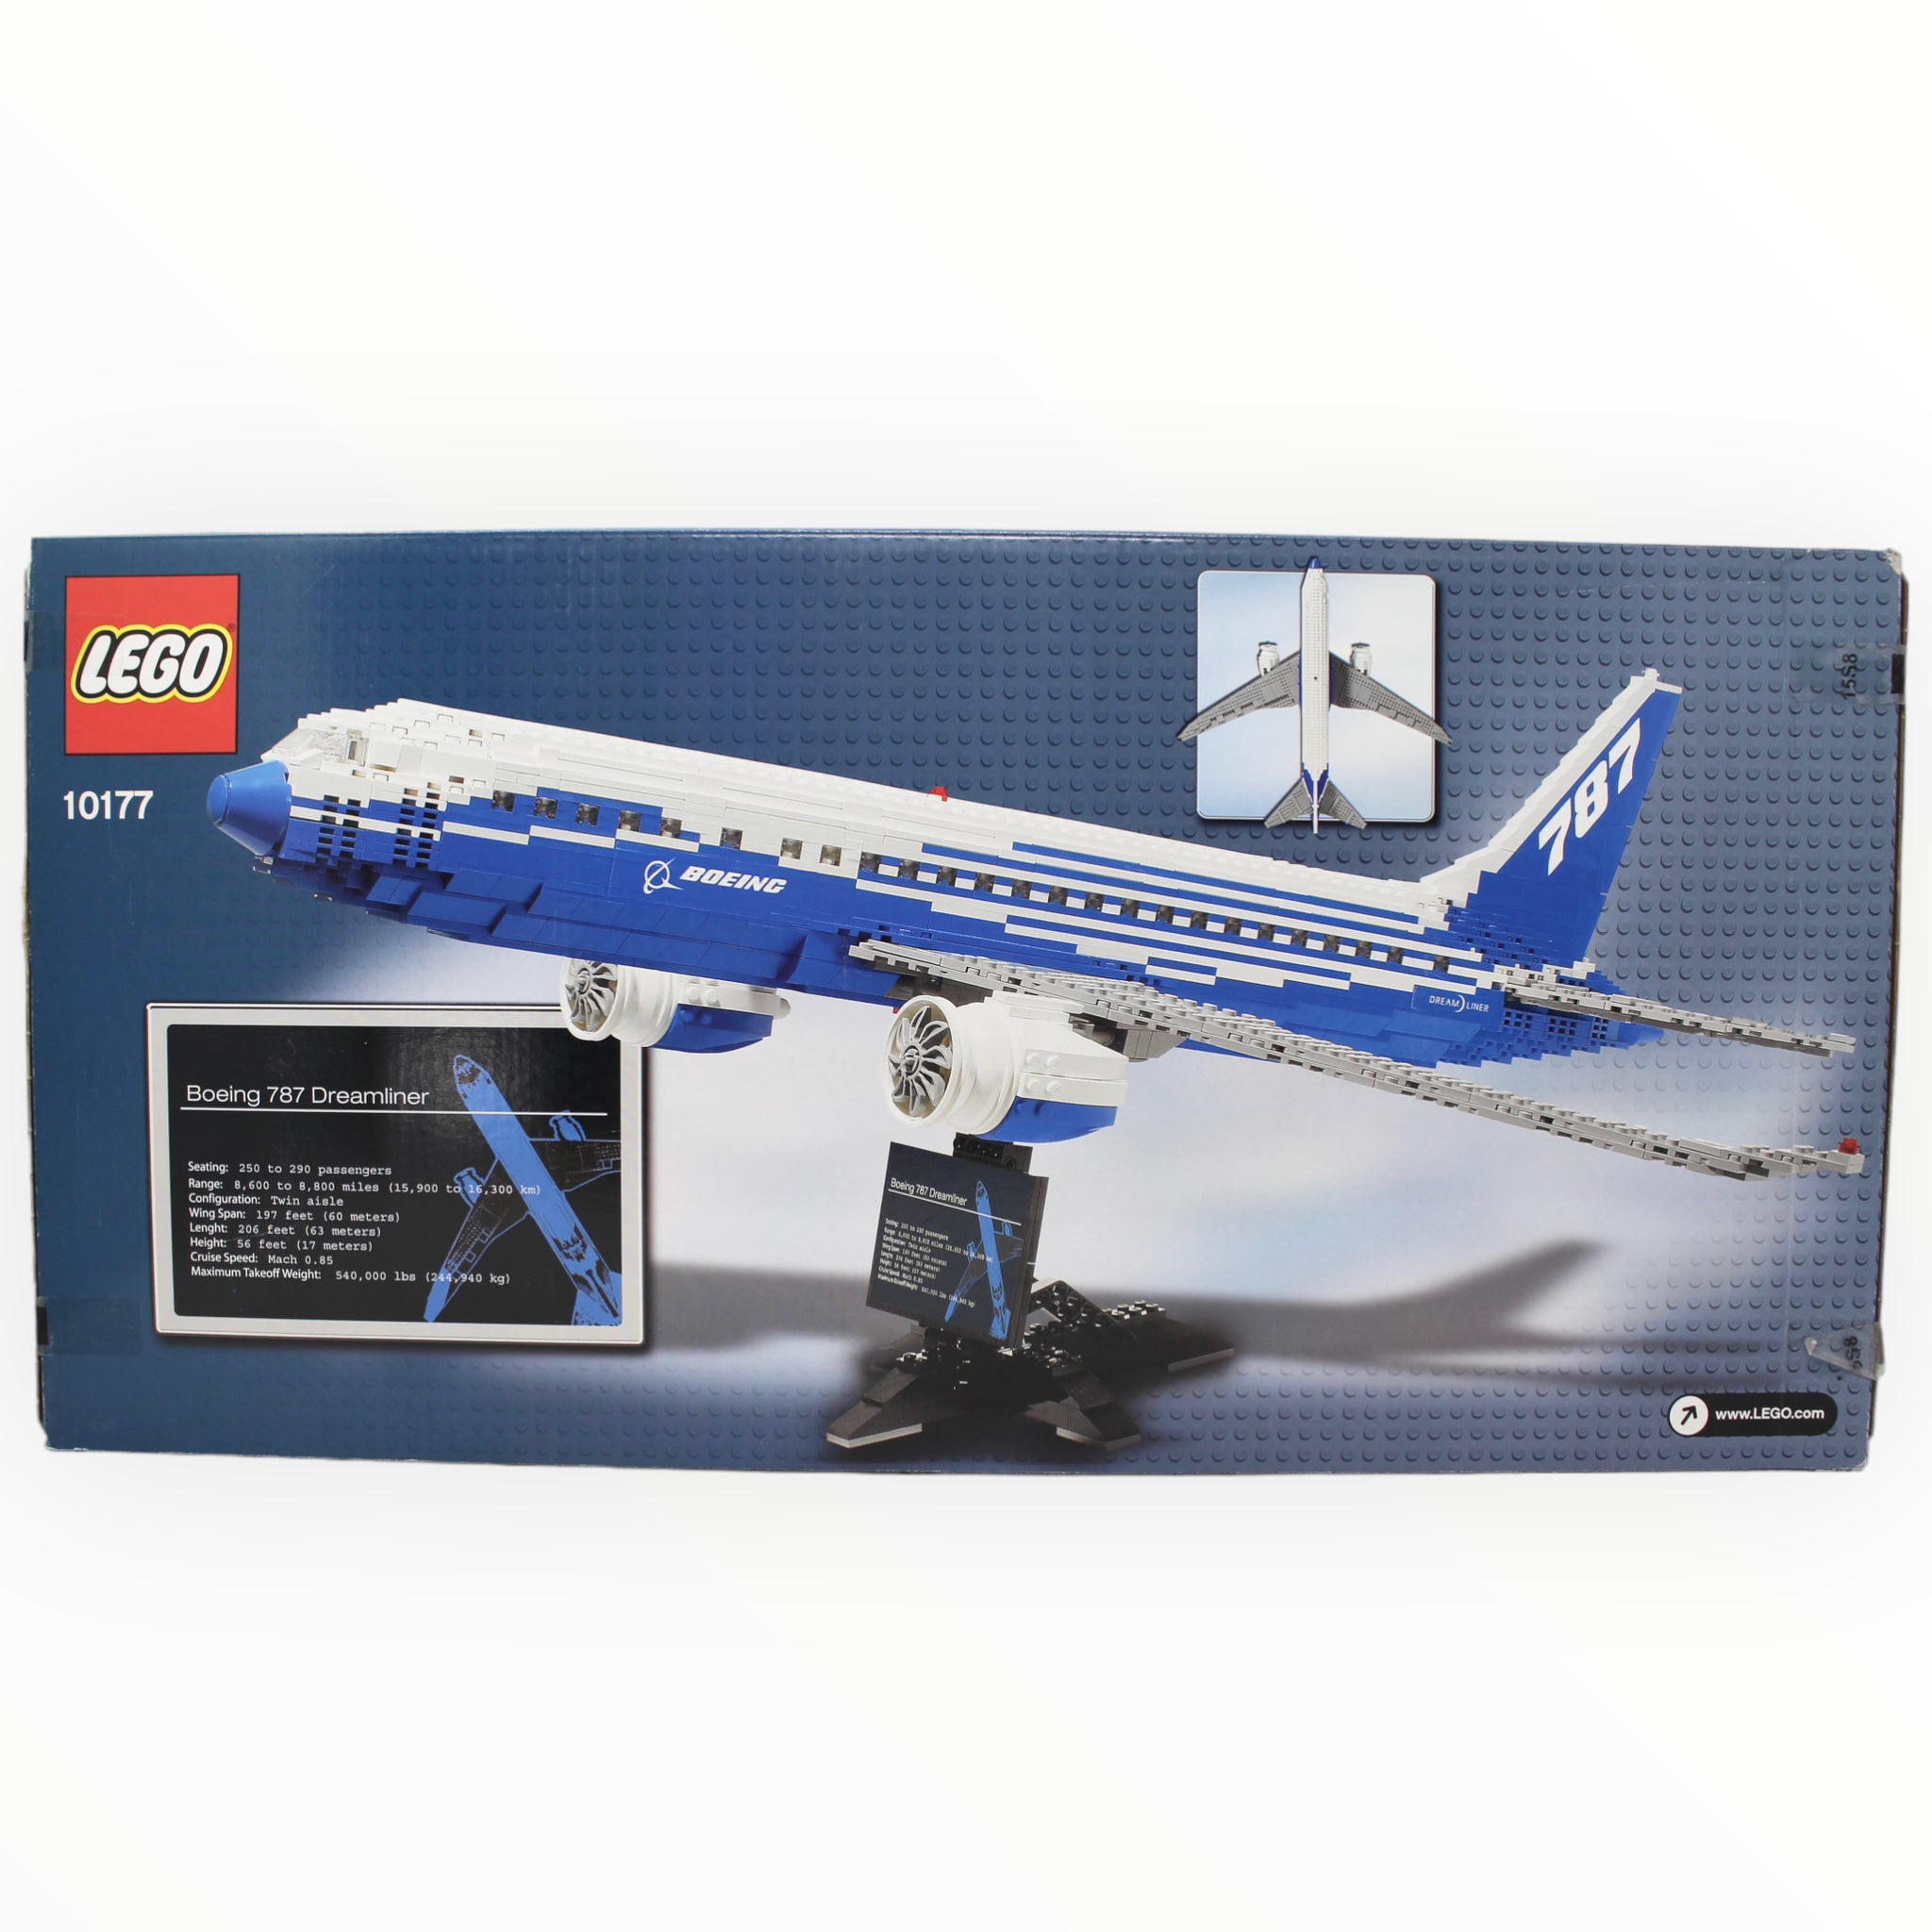 Retired Set 10177 LEGO Boeing 787 Dreamliner